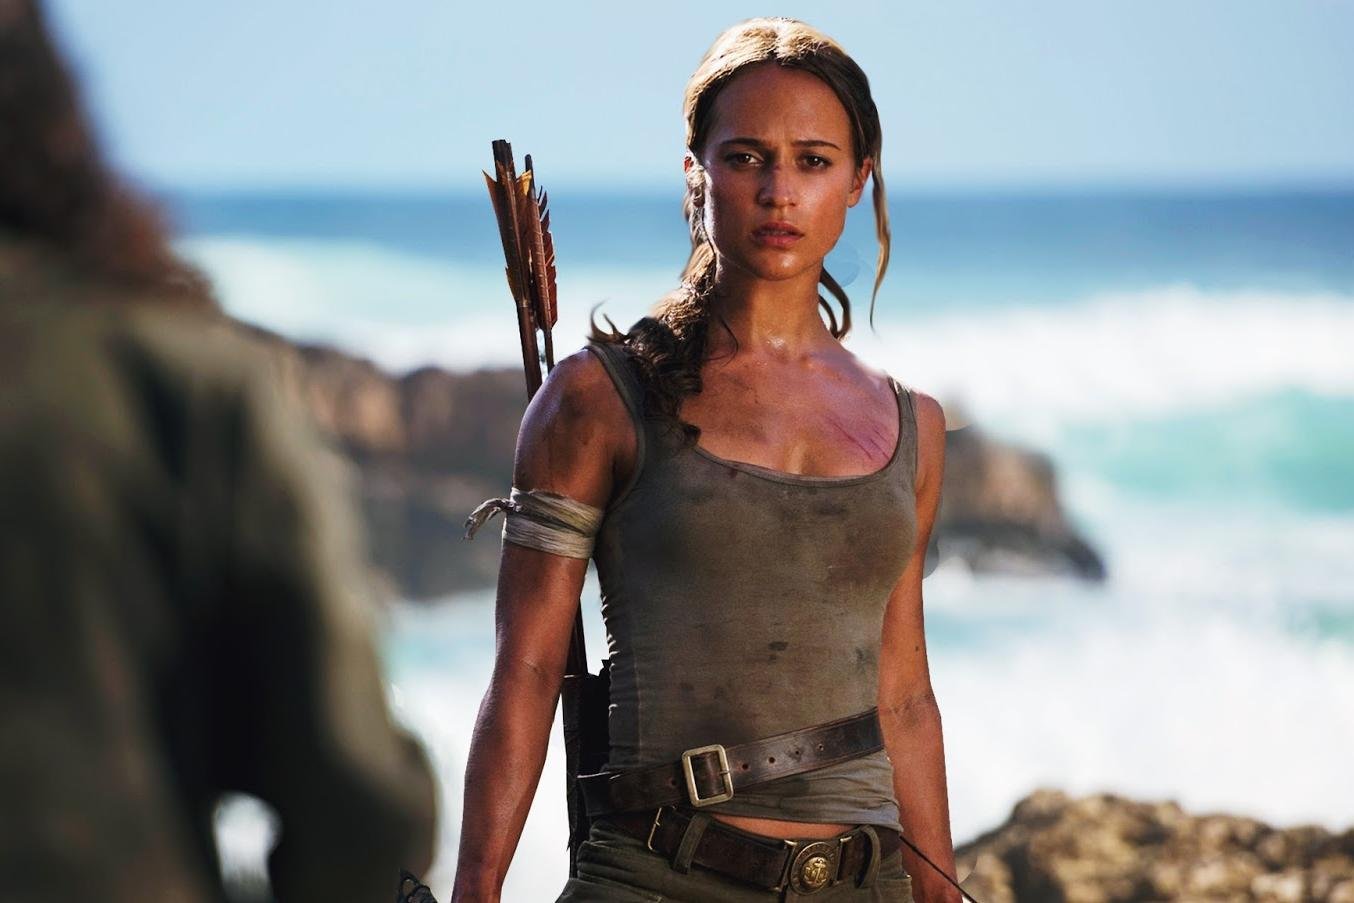 Sequência do filme TOMB RAIDER finalmente confirmada! - LARA CROFT PT:  Fansite de Tomb Raider oficializado e premiado